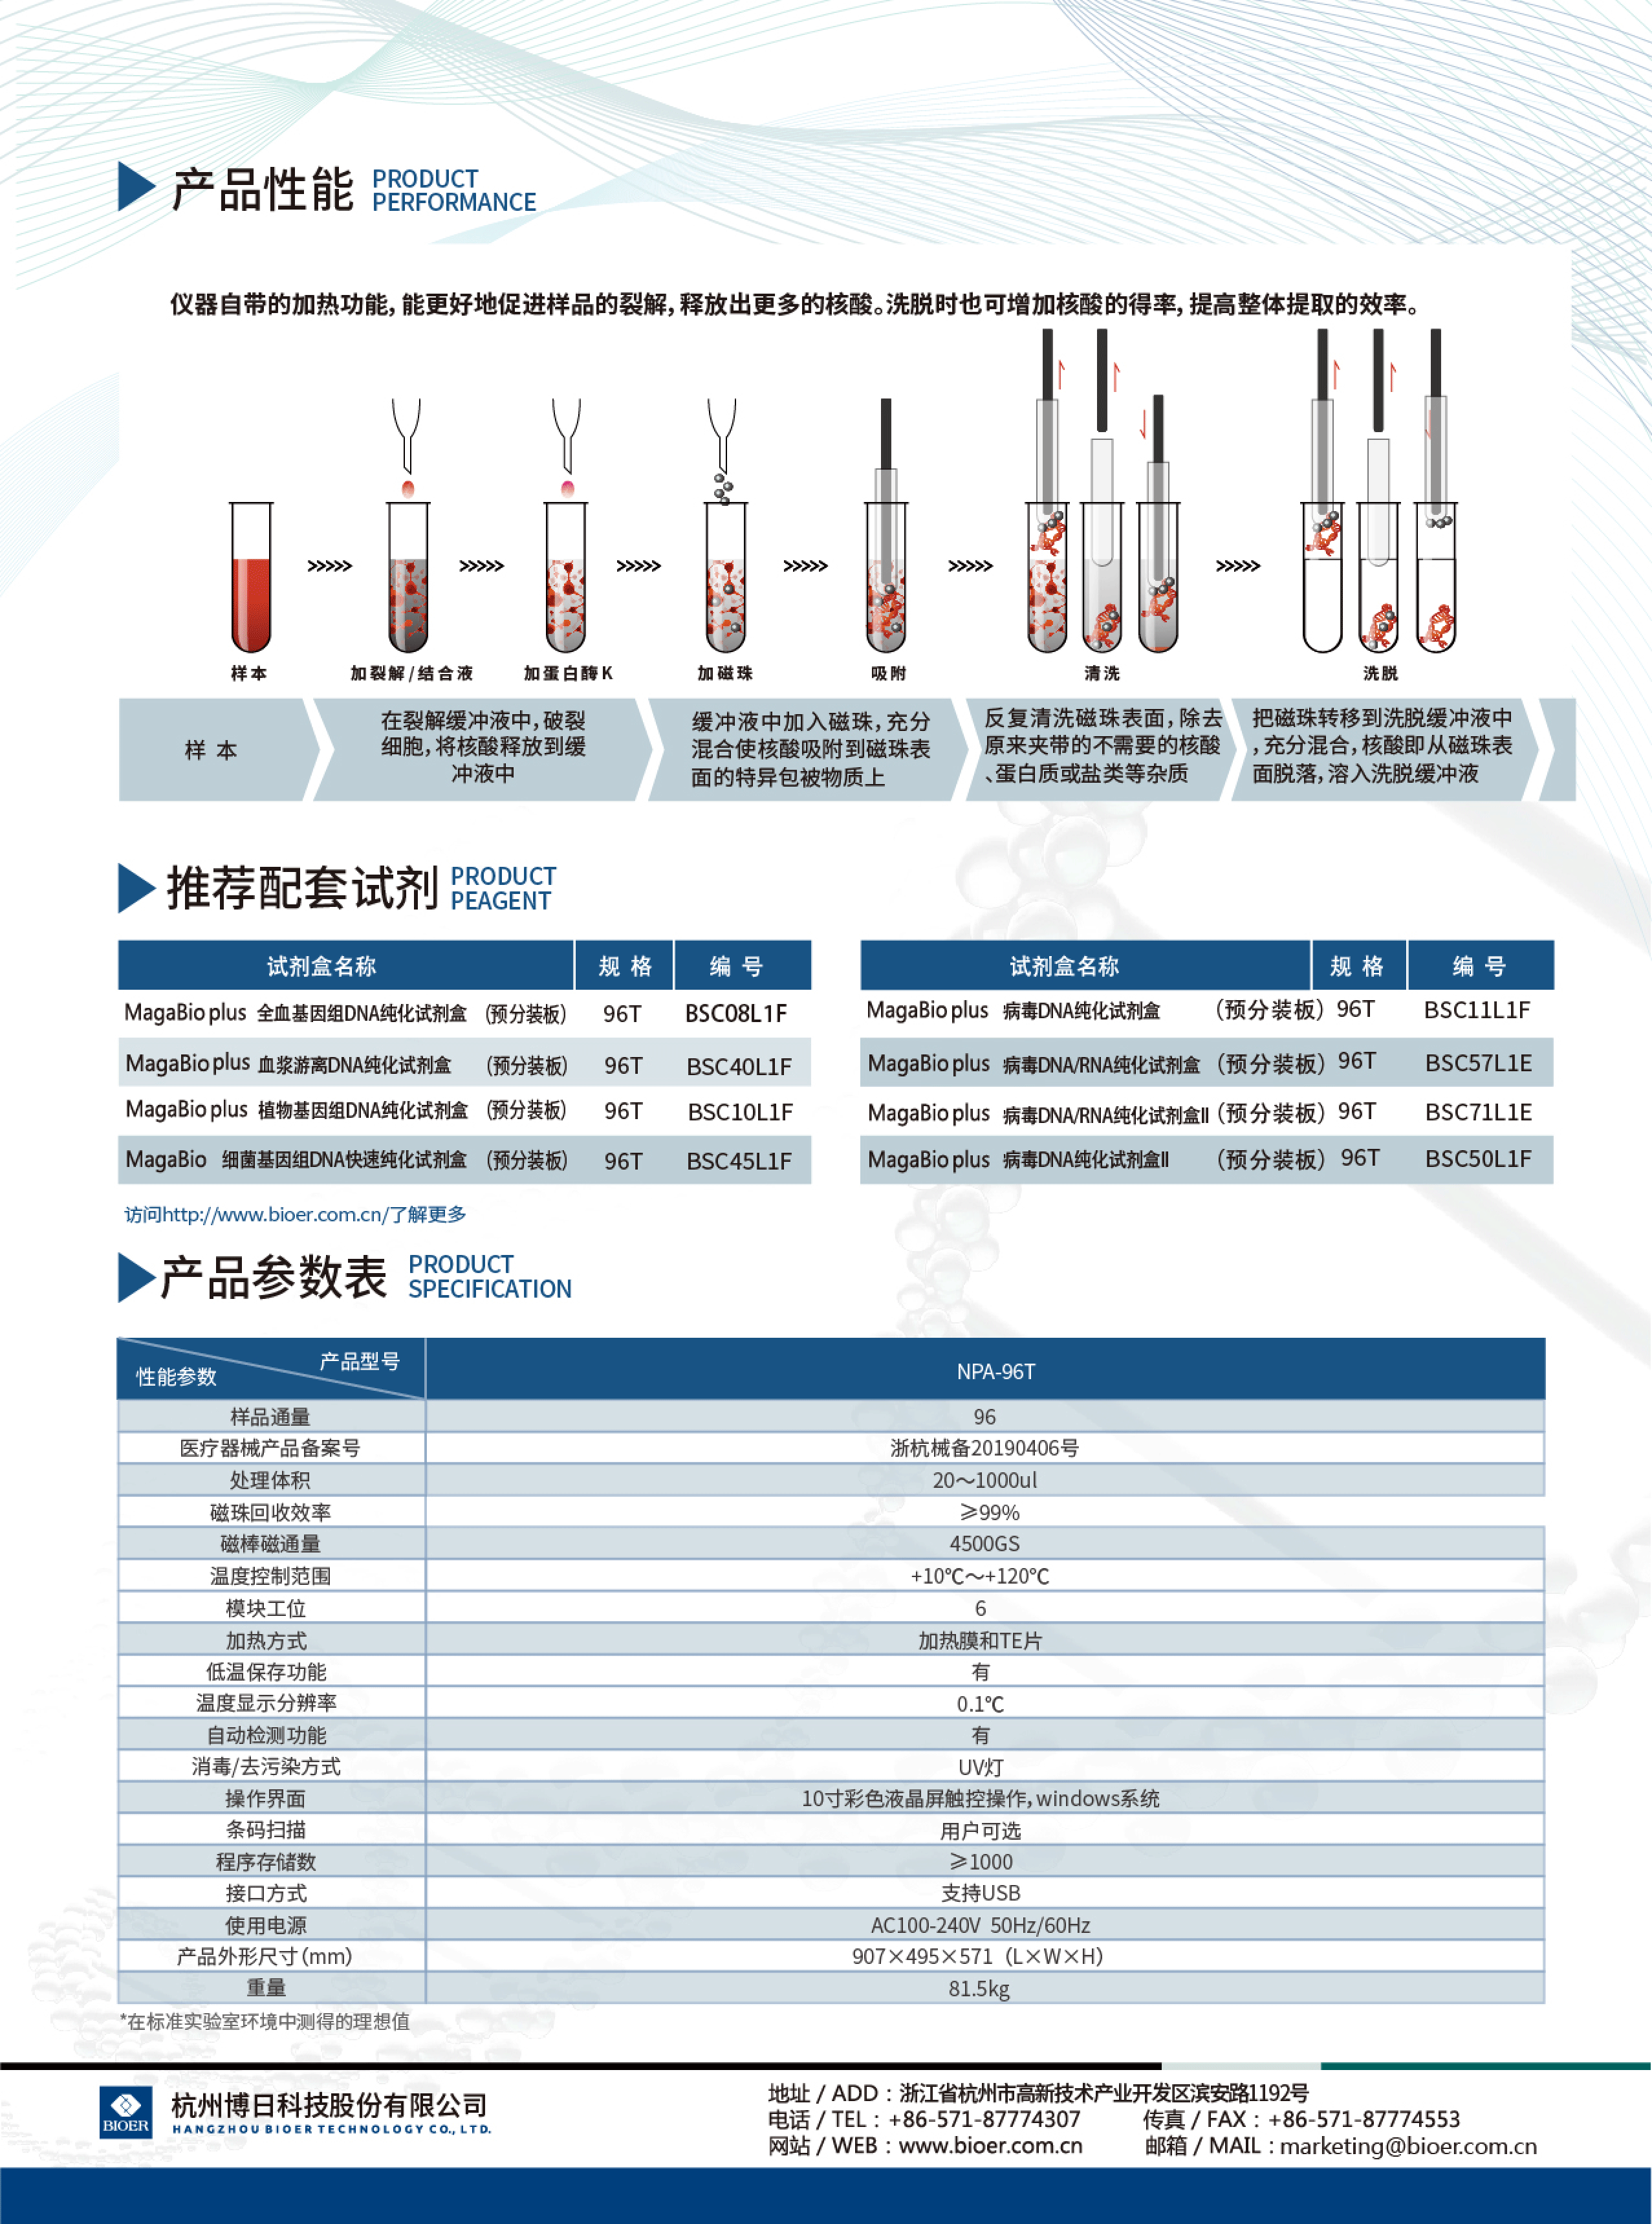 杭州博日         全自动核酸提取纯化仪NAP-96T